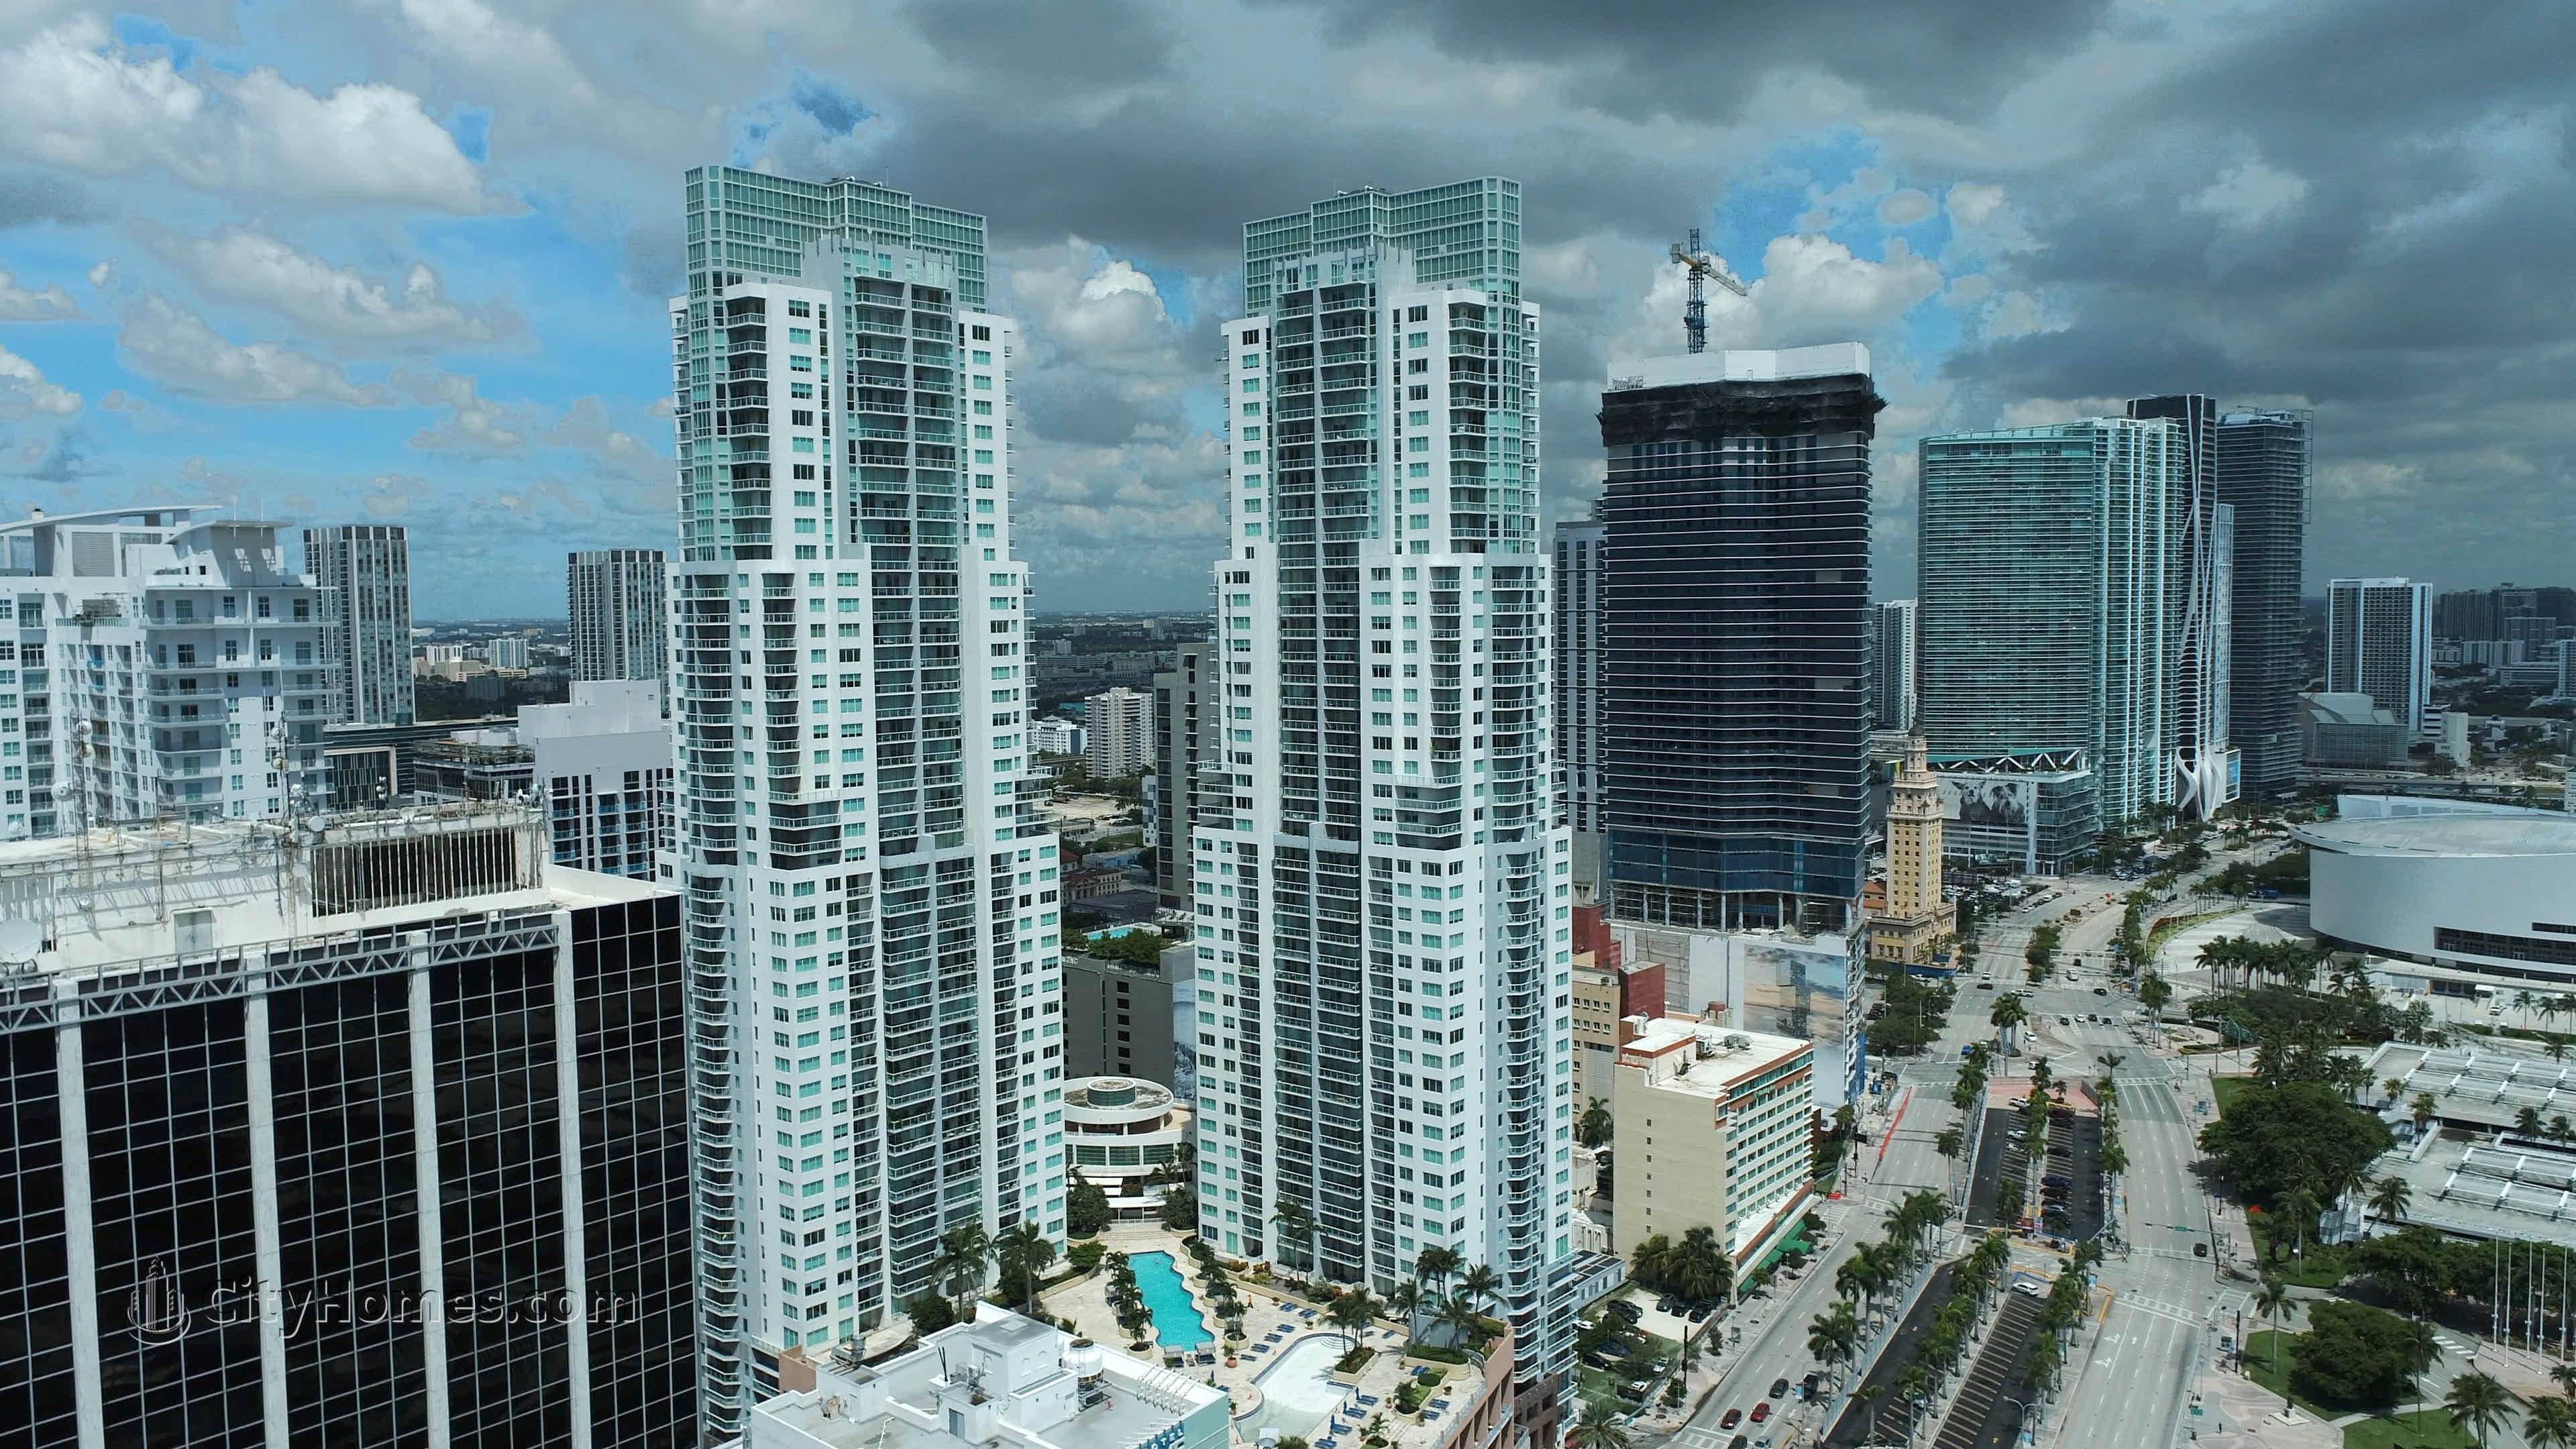 Vizcayne South edificio a 253 NE 2nd Street, Downtown Miami, Miami, FL 33132